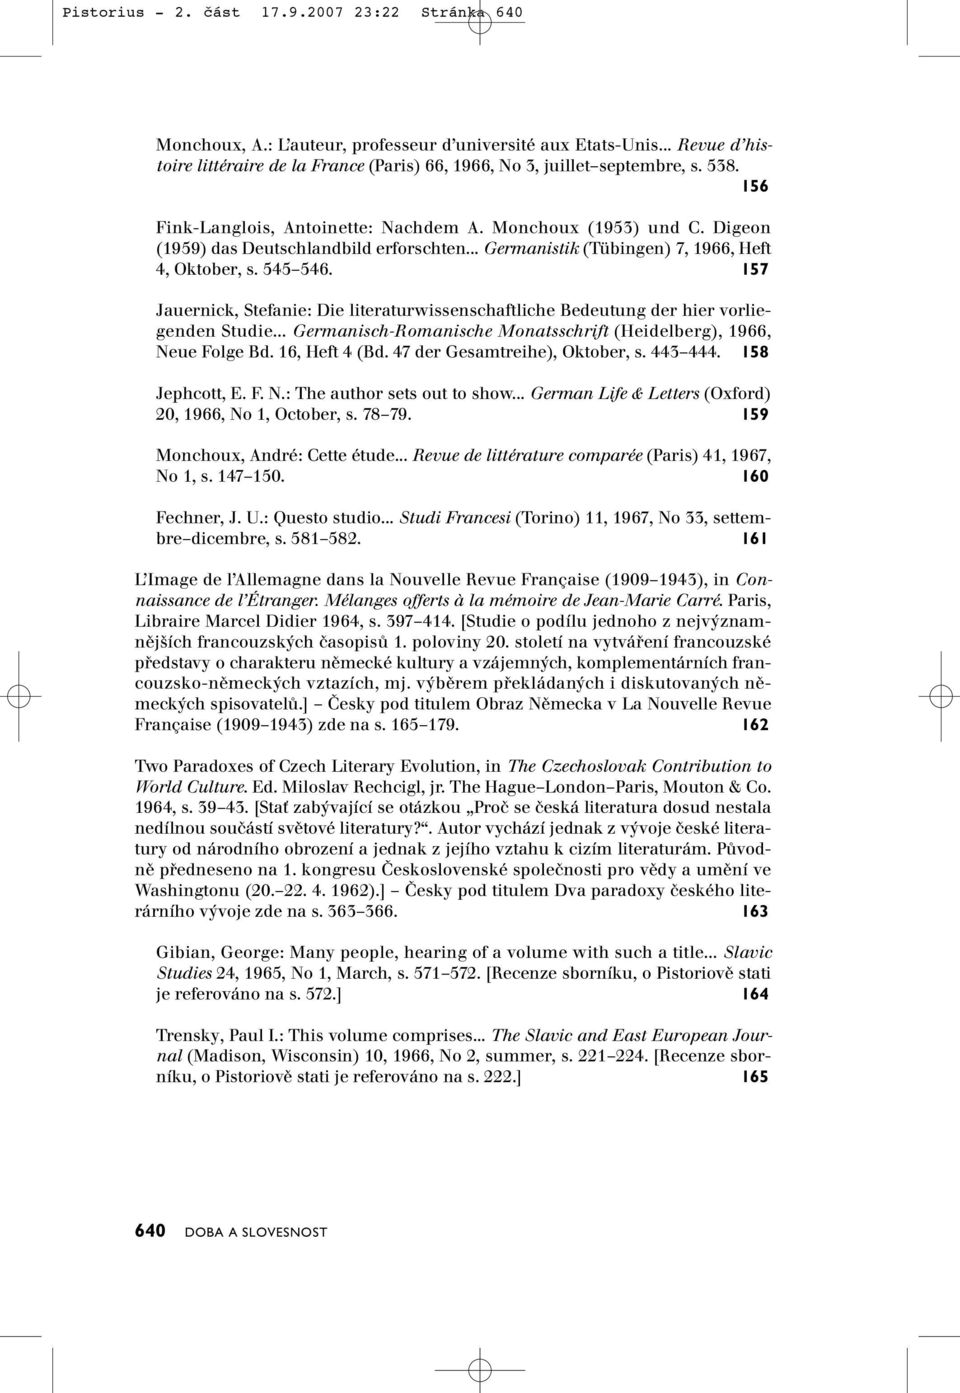 157 Jauernick, Stefanie: Die literaturwissenschaftliche Bedeutung der hier vorliegenden Studie... Germanisch-Romanische Monatsschrift (Heidelberg), 1966, Neue Folge Bd. 16, Heft 4 (Bd.